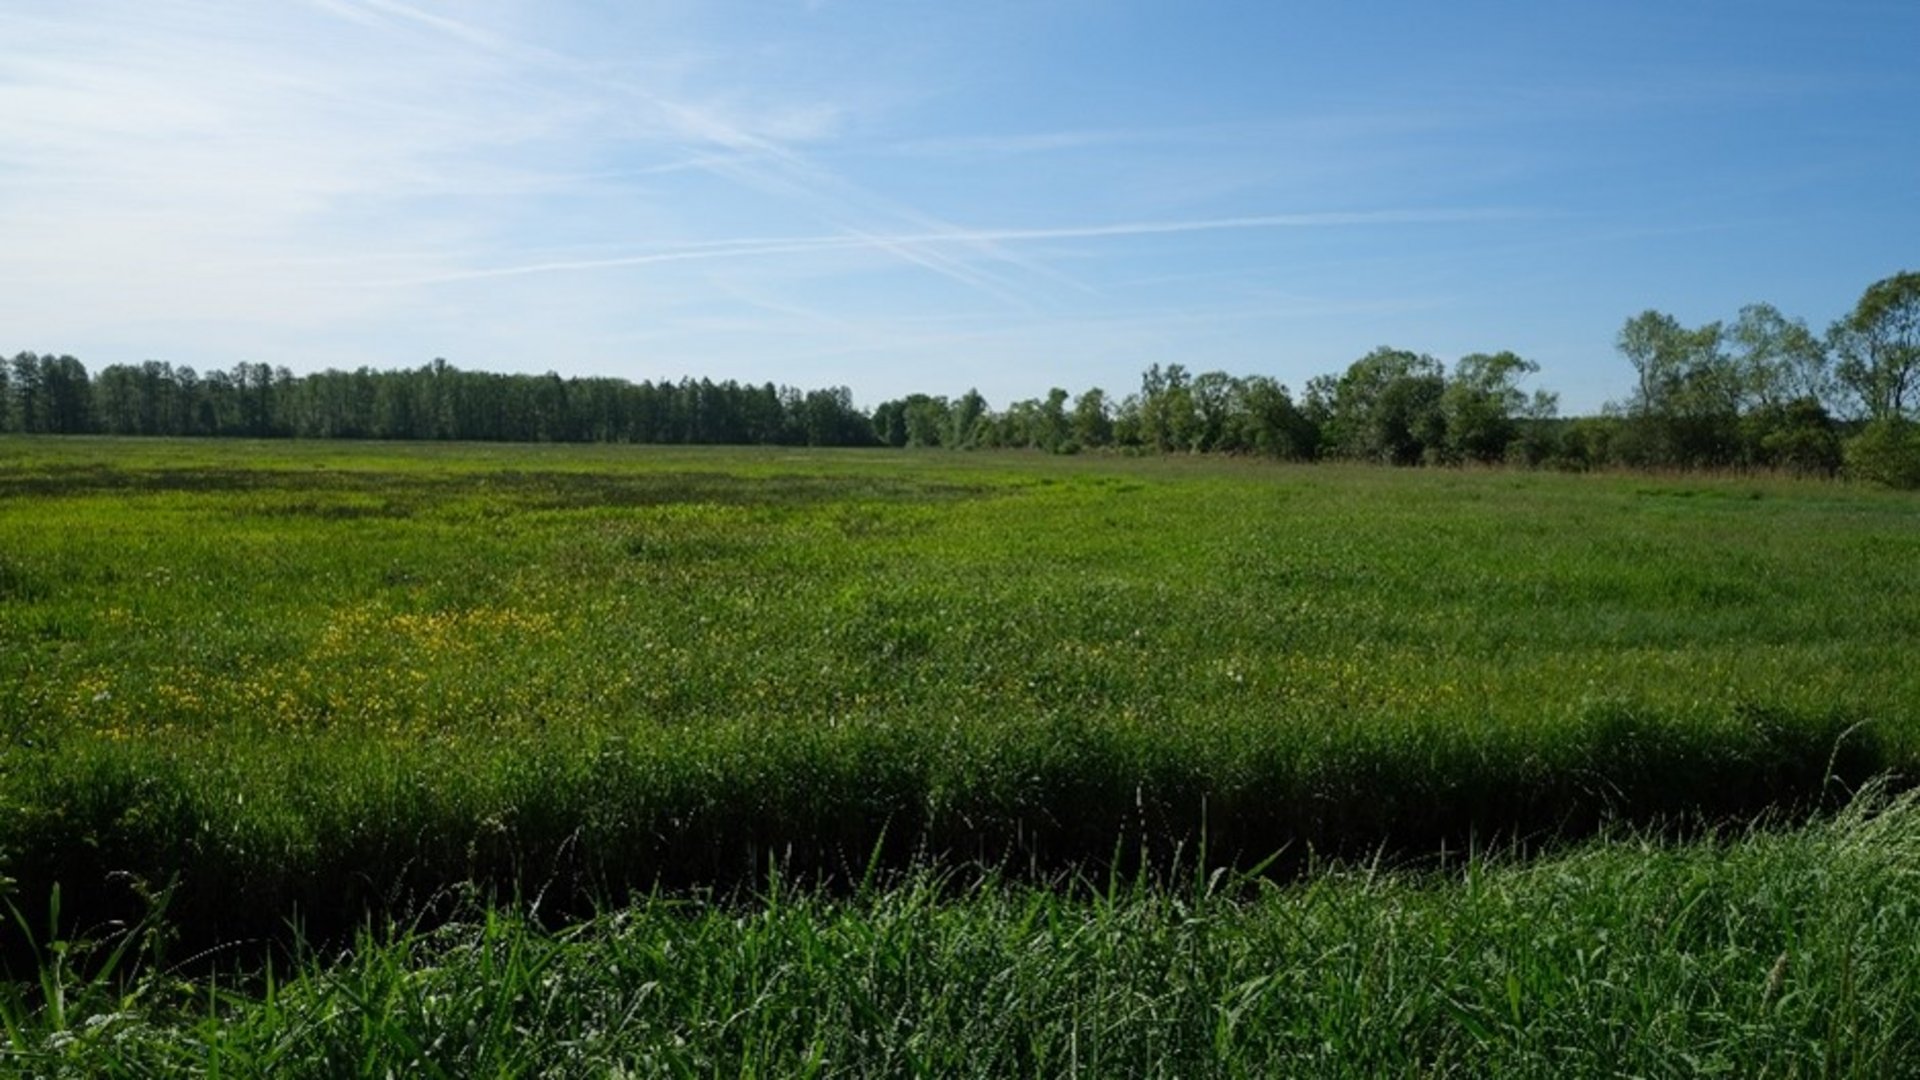 Weite Moorfläche in Raddusch, grüne Fläche bei blauem Himmel